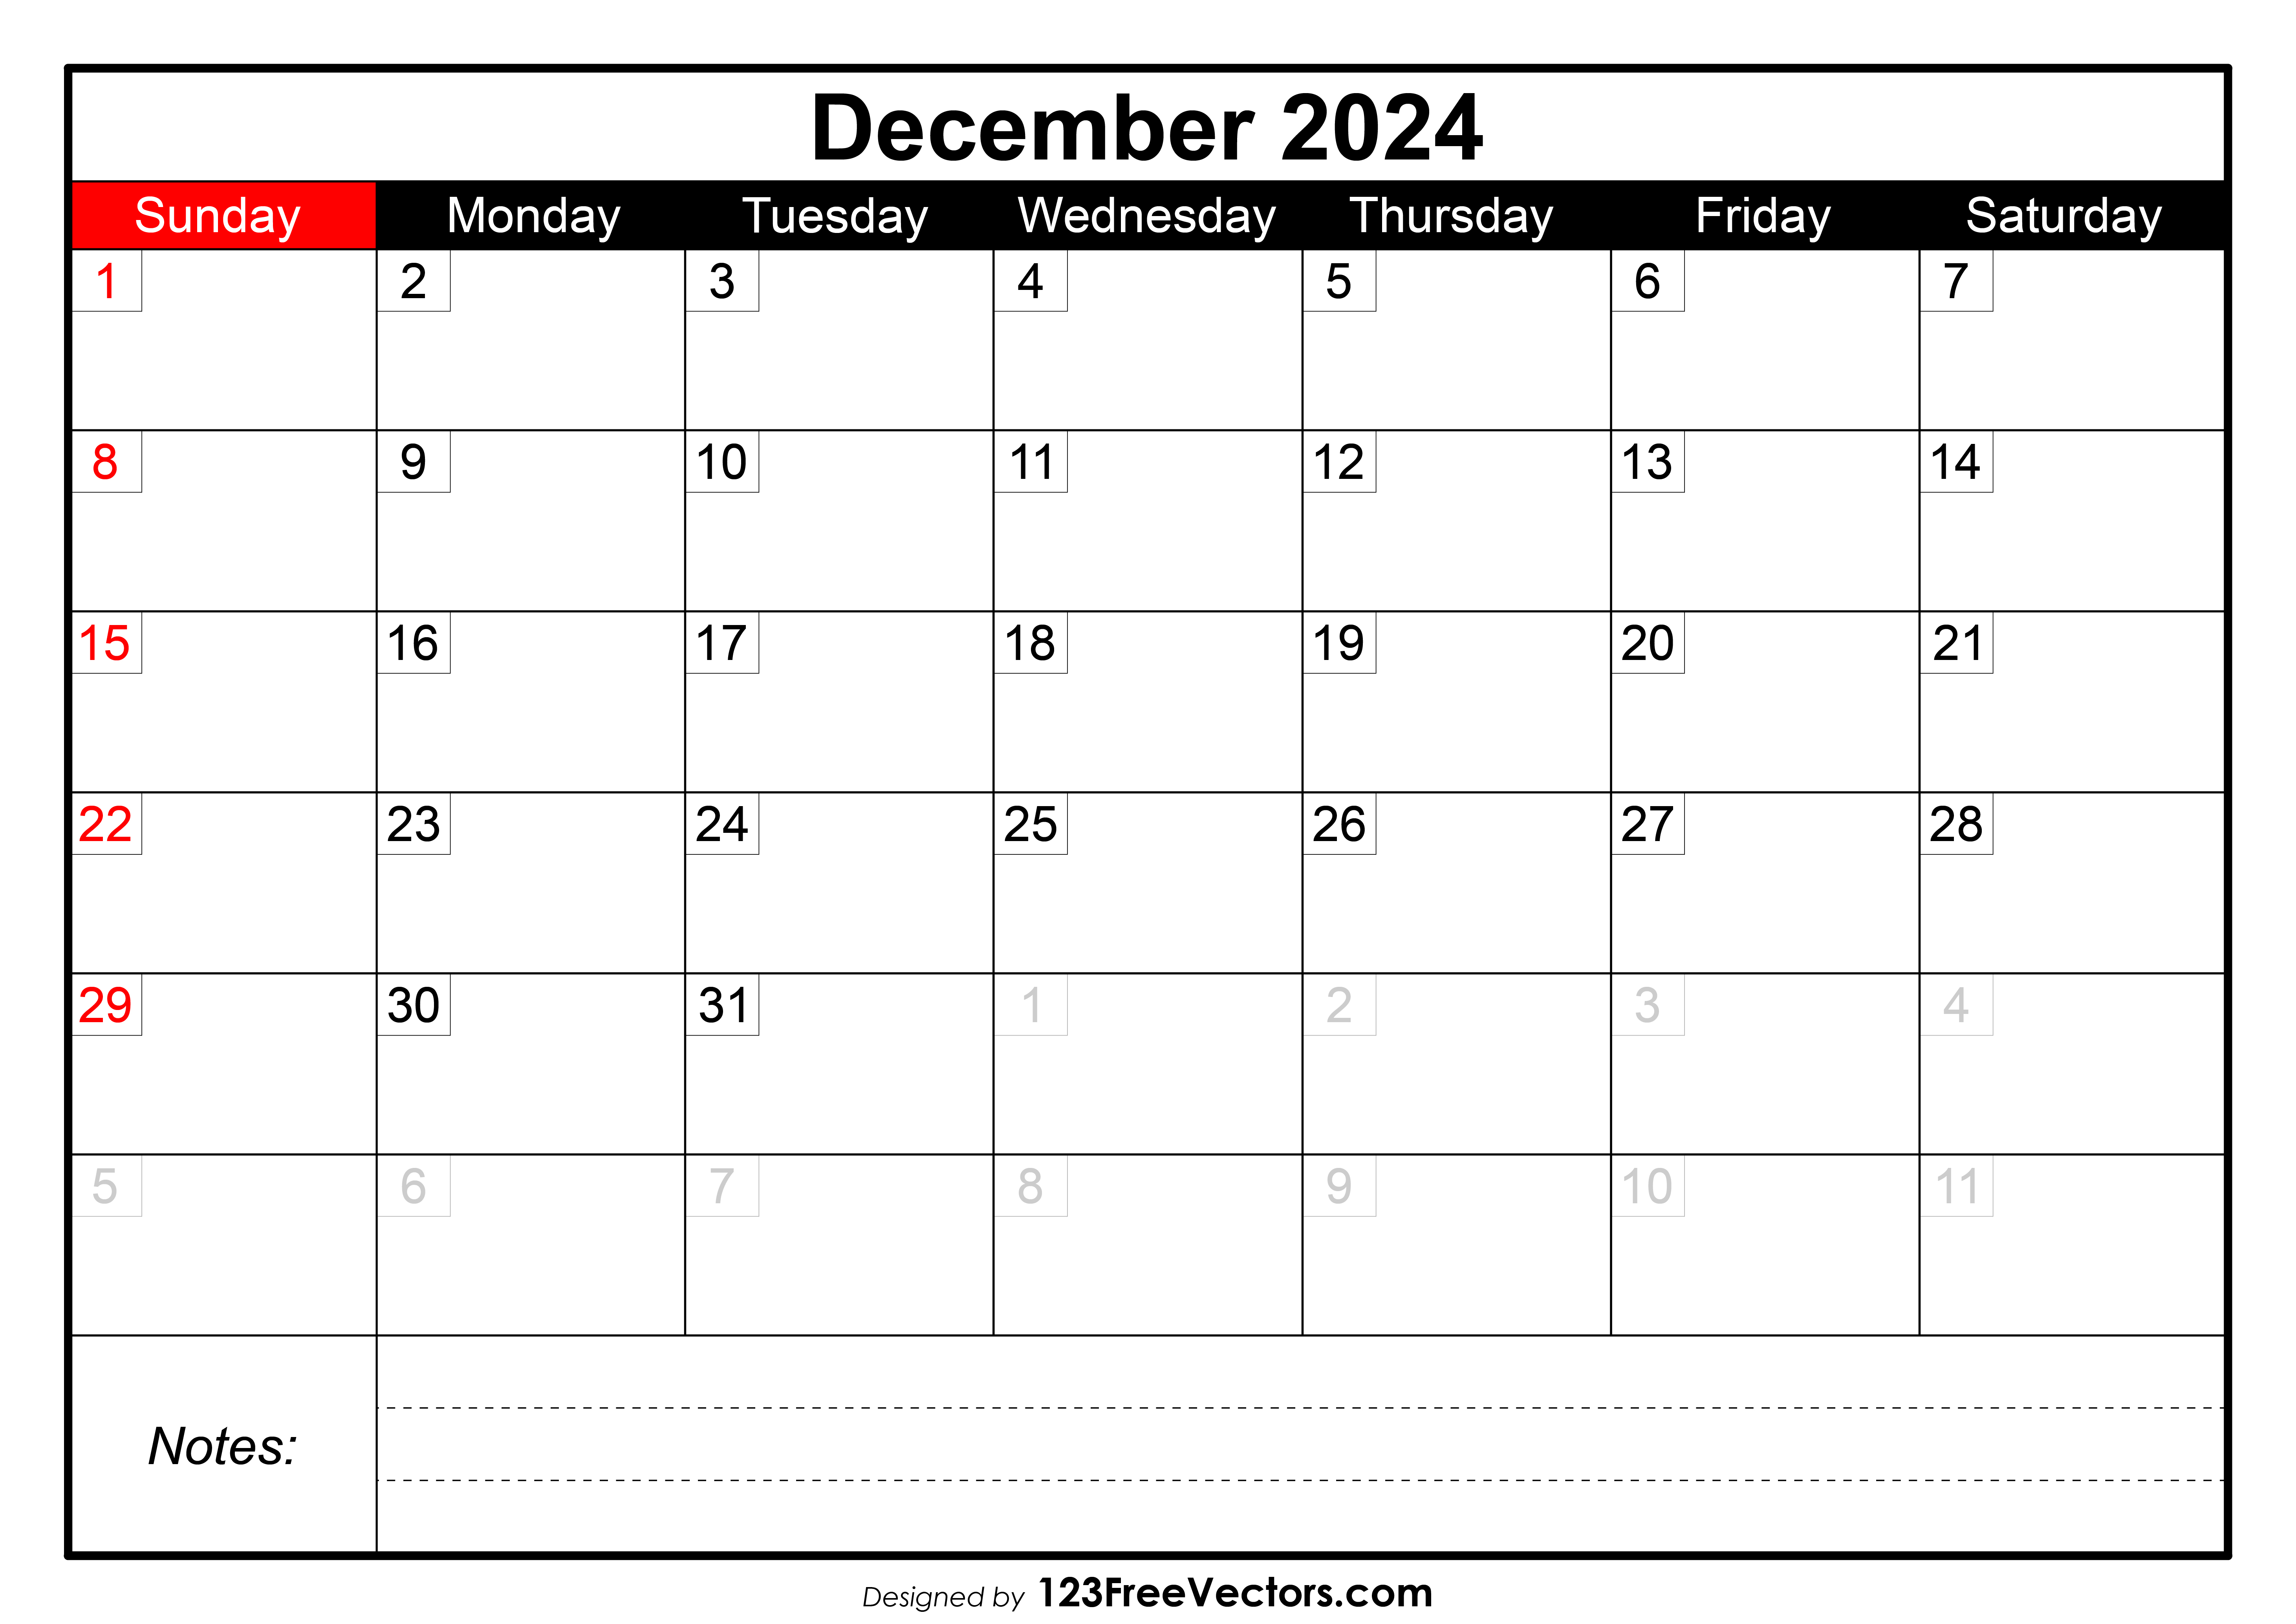 December Calendar 2024 With Holidays Calendar Quickly vrogue.co